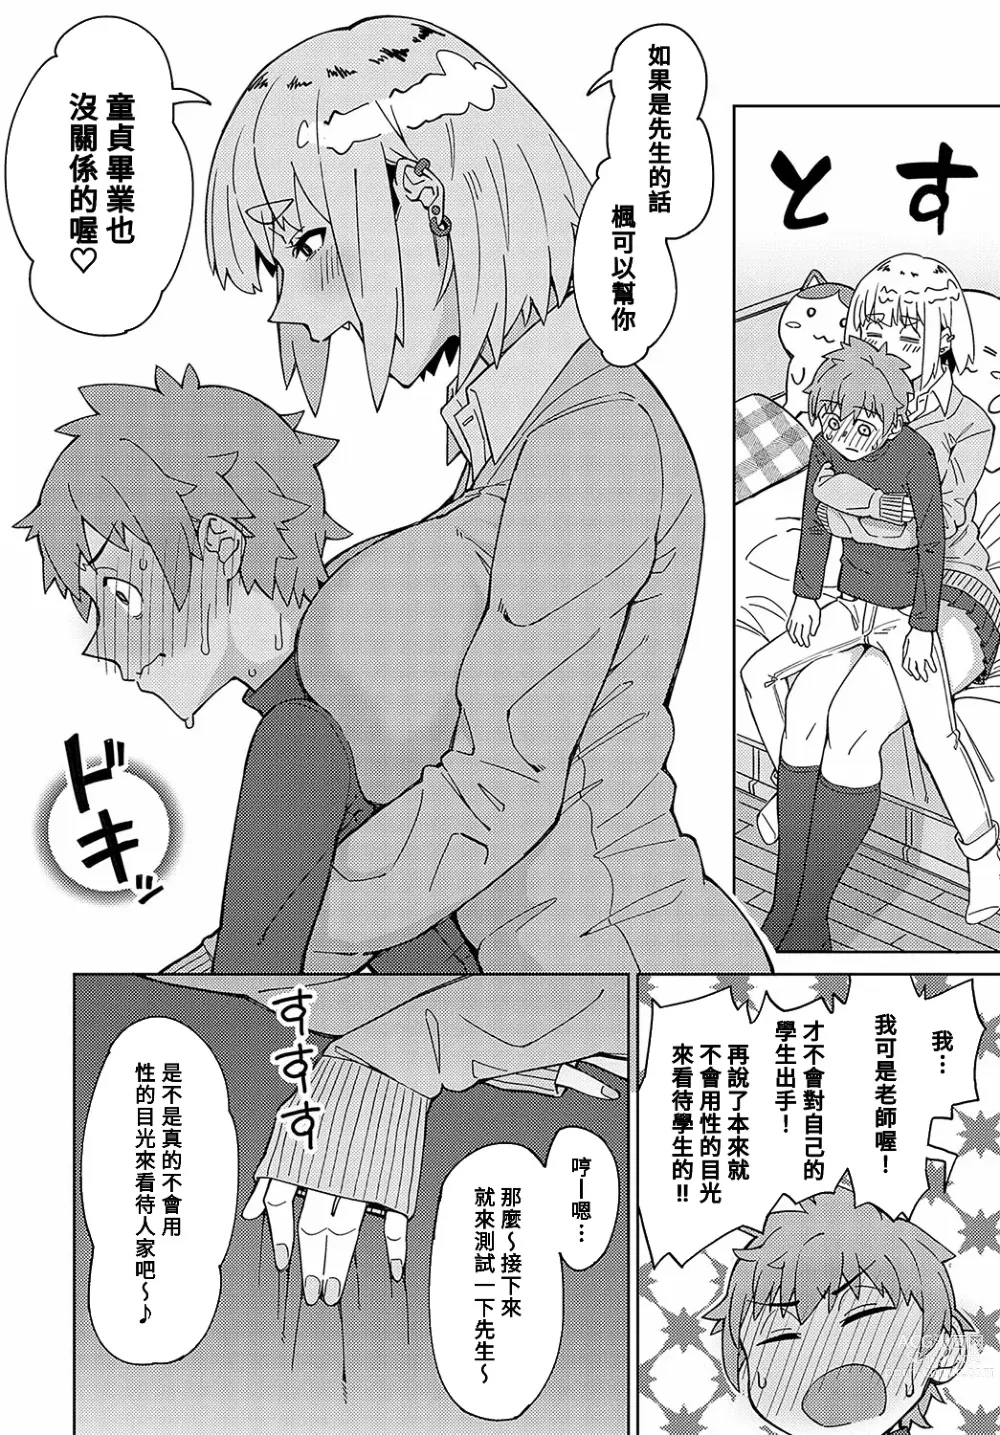 Page 4 of manga Sensei na no ni Makechau no